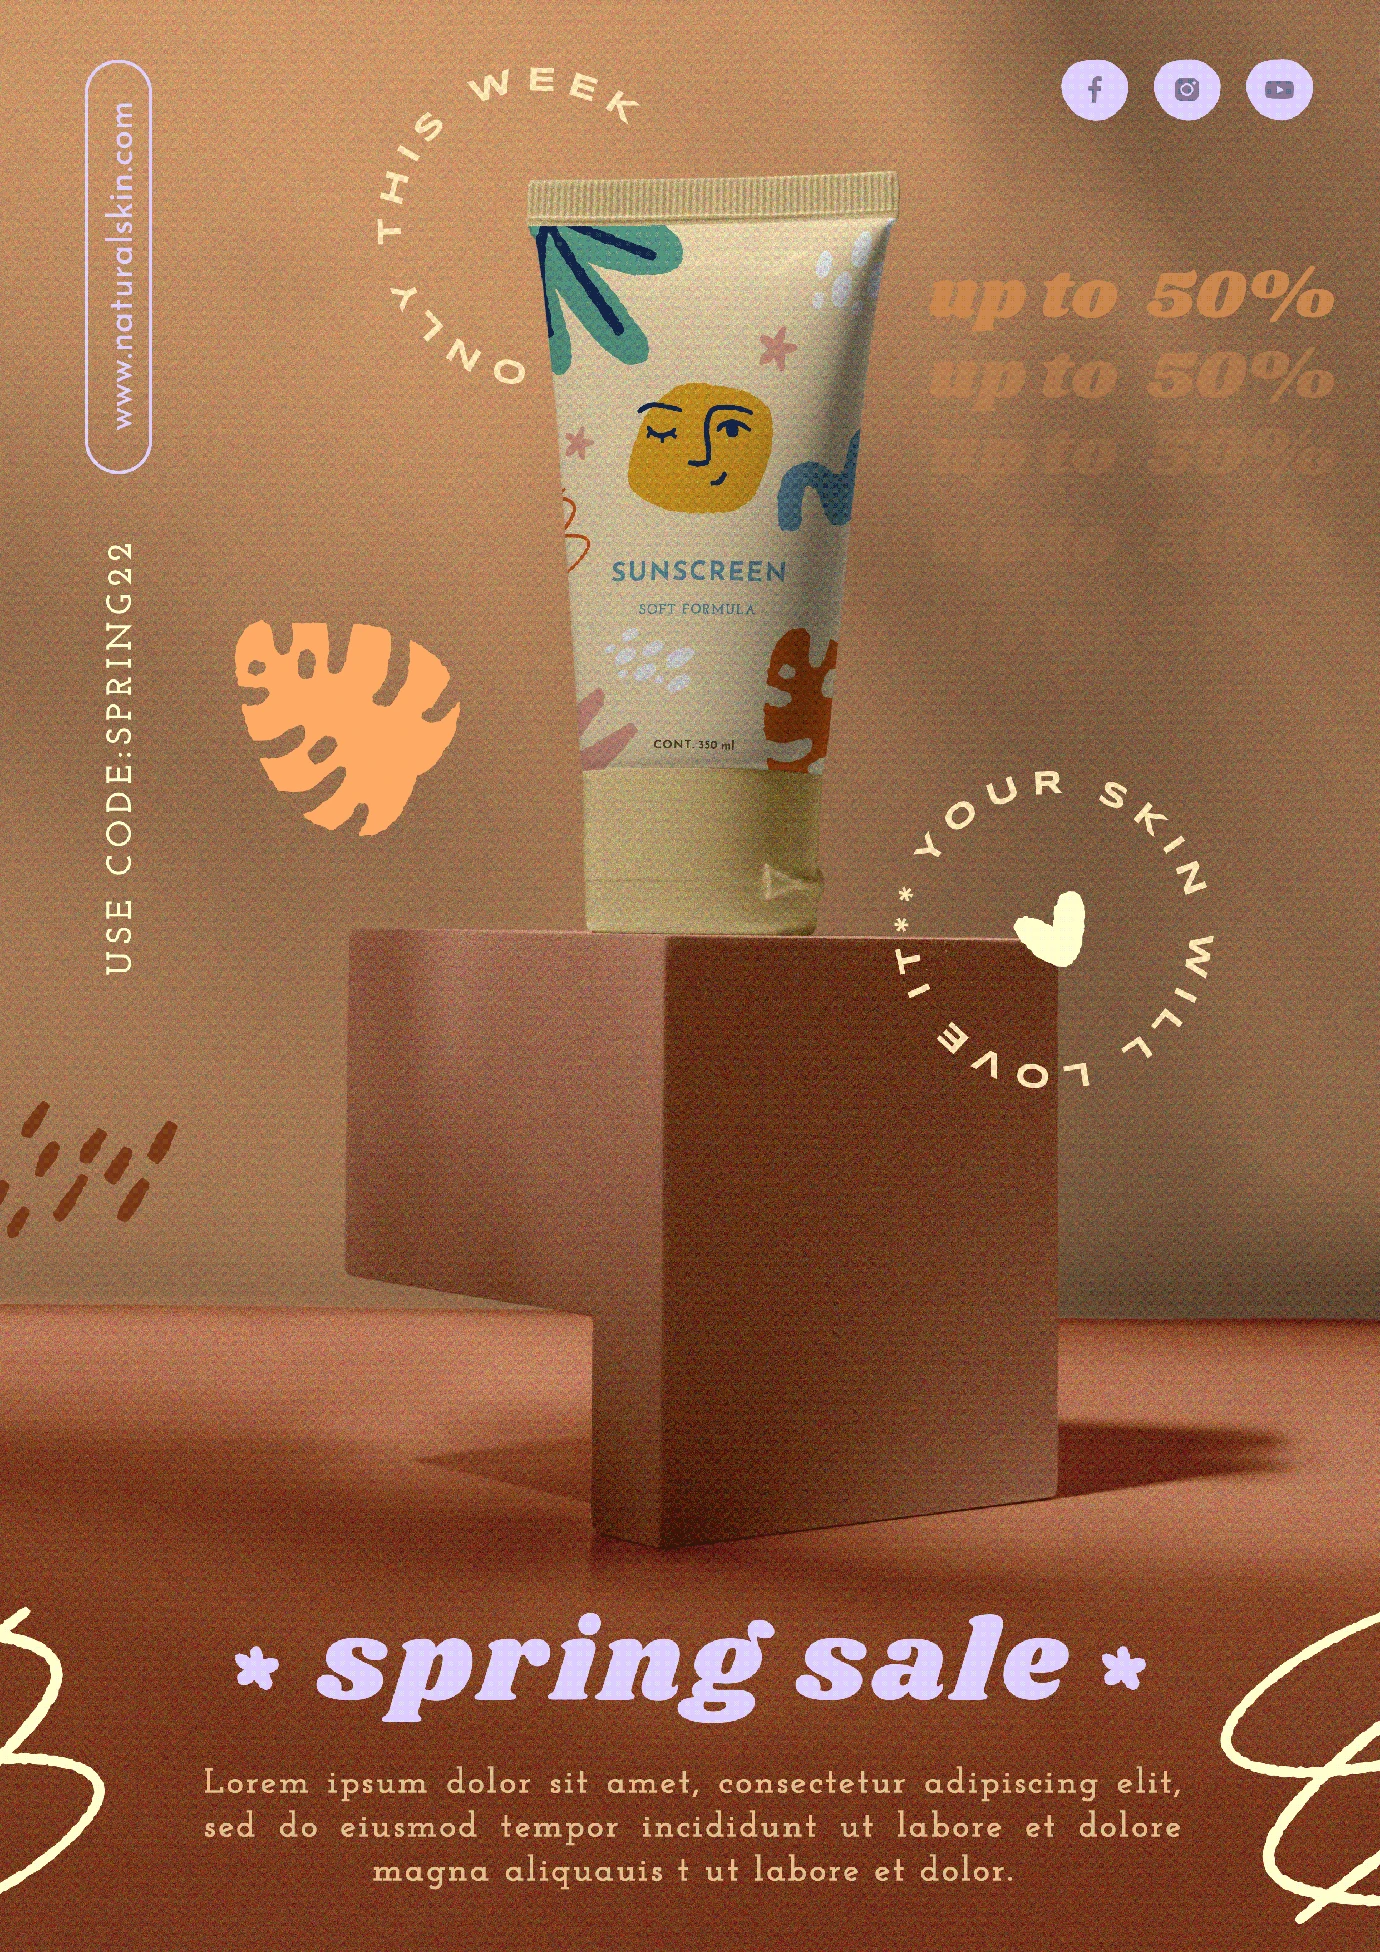 潮流酸性创意护肤品彩妆美容产品宣传促销折扣海报模板PSD素材【003】